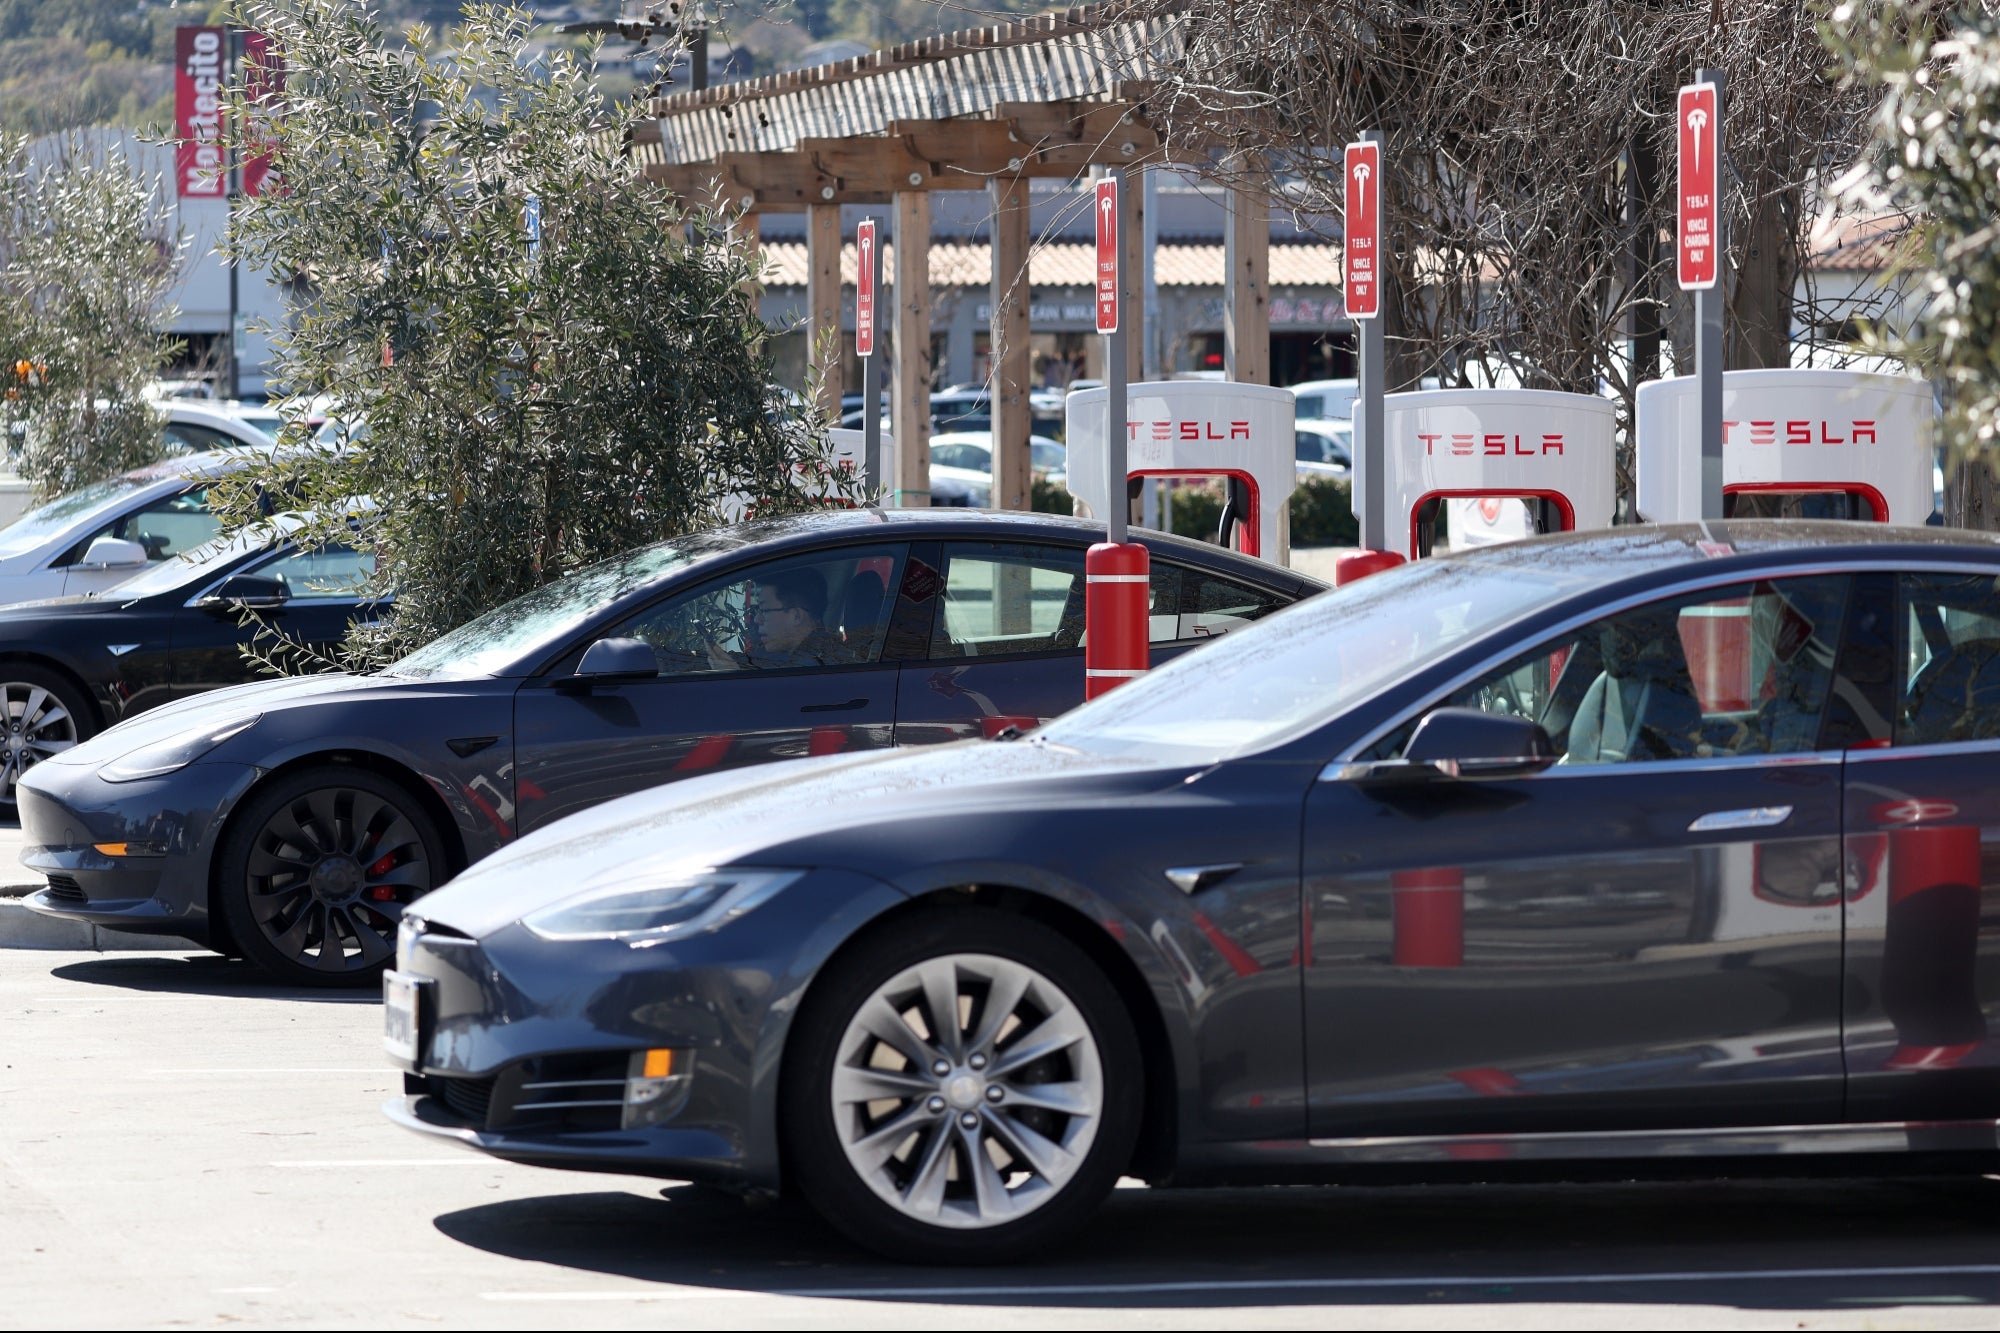 Tesla Recalling 362,000 Vehicles Over FSD Software Concerns